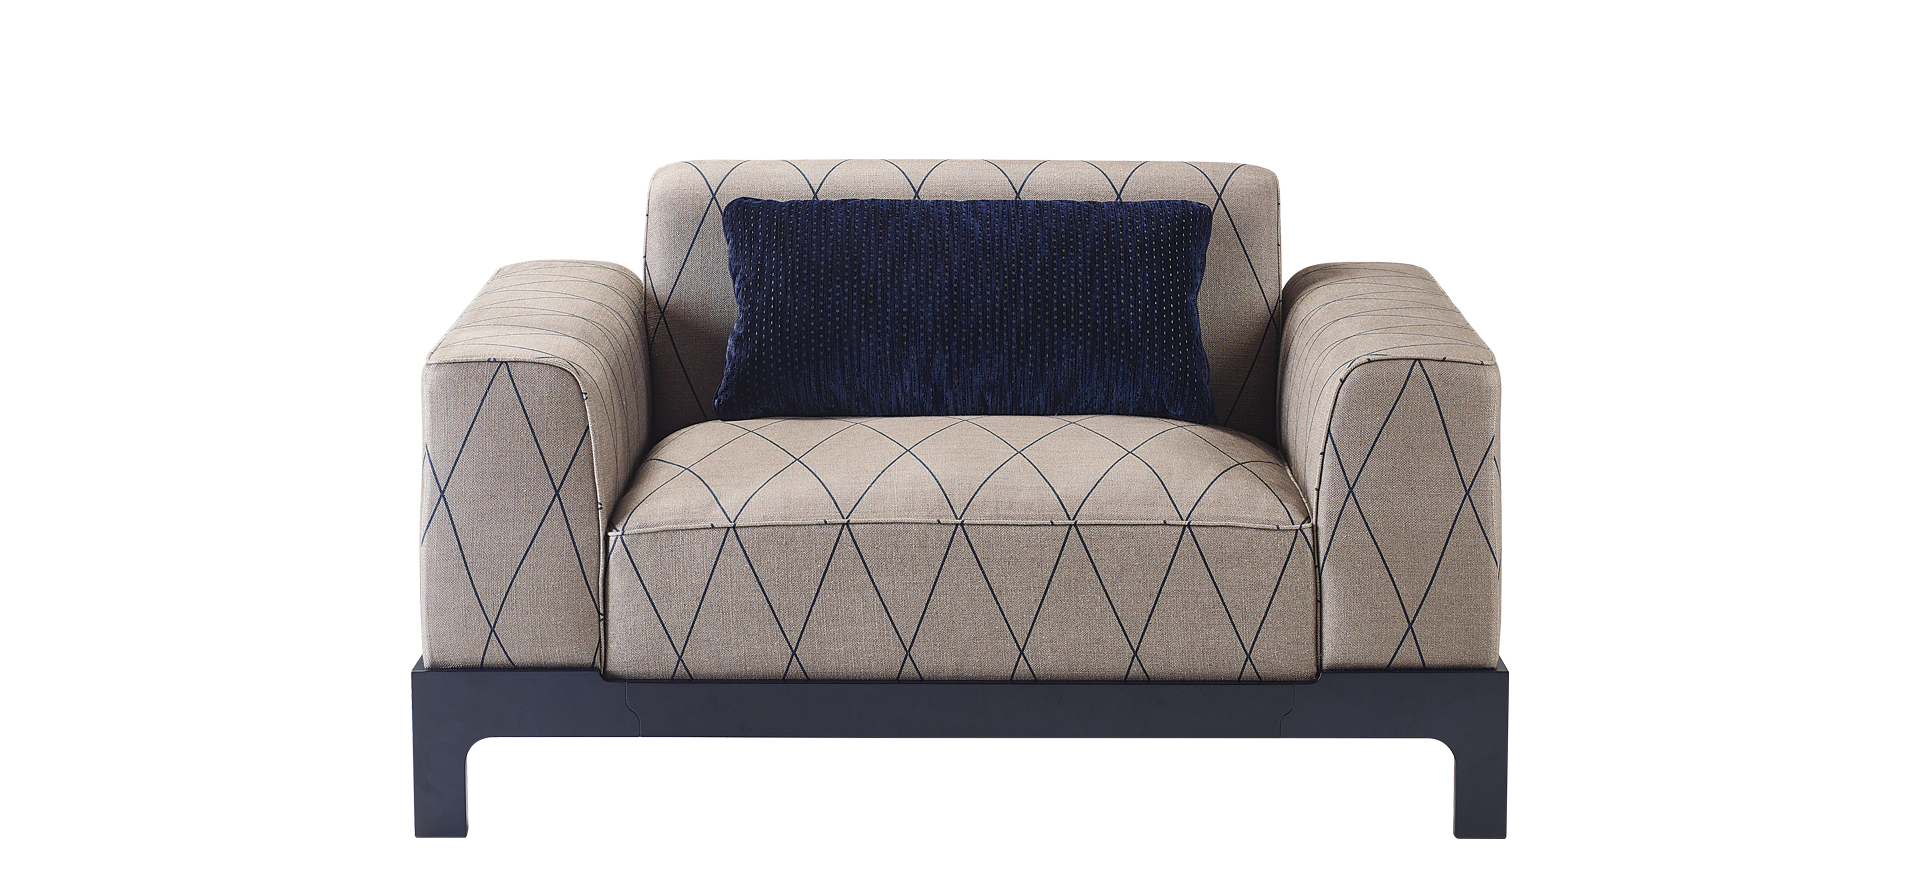 Pullman est un canapé en bois avec revêtement et coussins en tissu. Ce meuble fait partie de la collection « Indigo Tales » de Promemoria | Promemoria